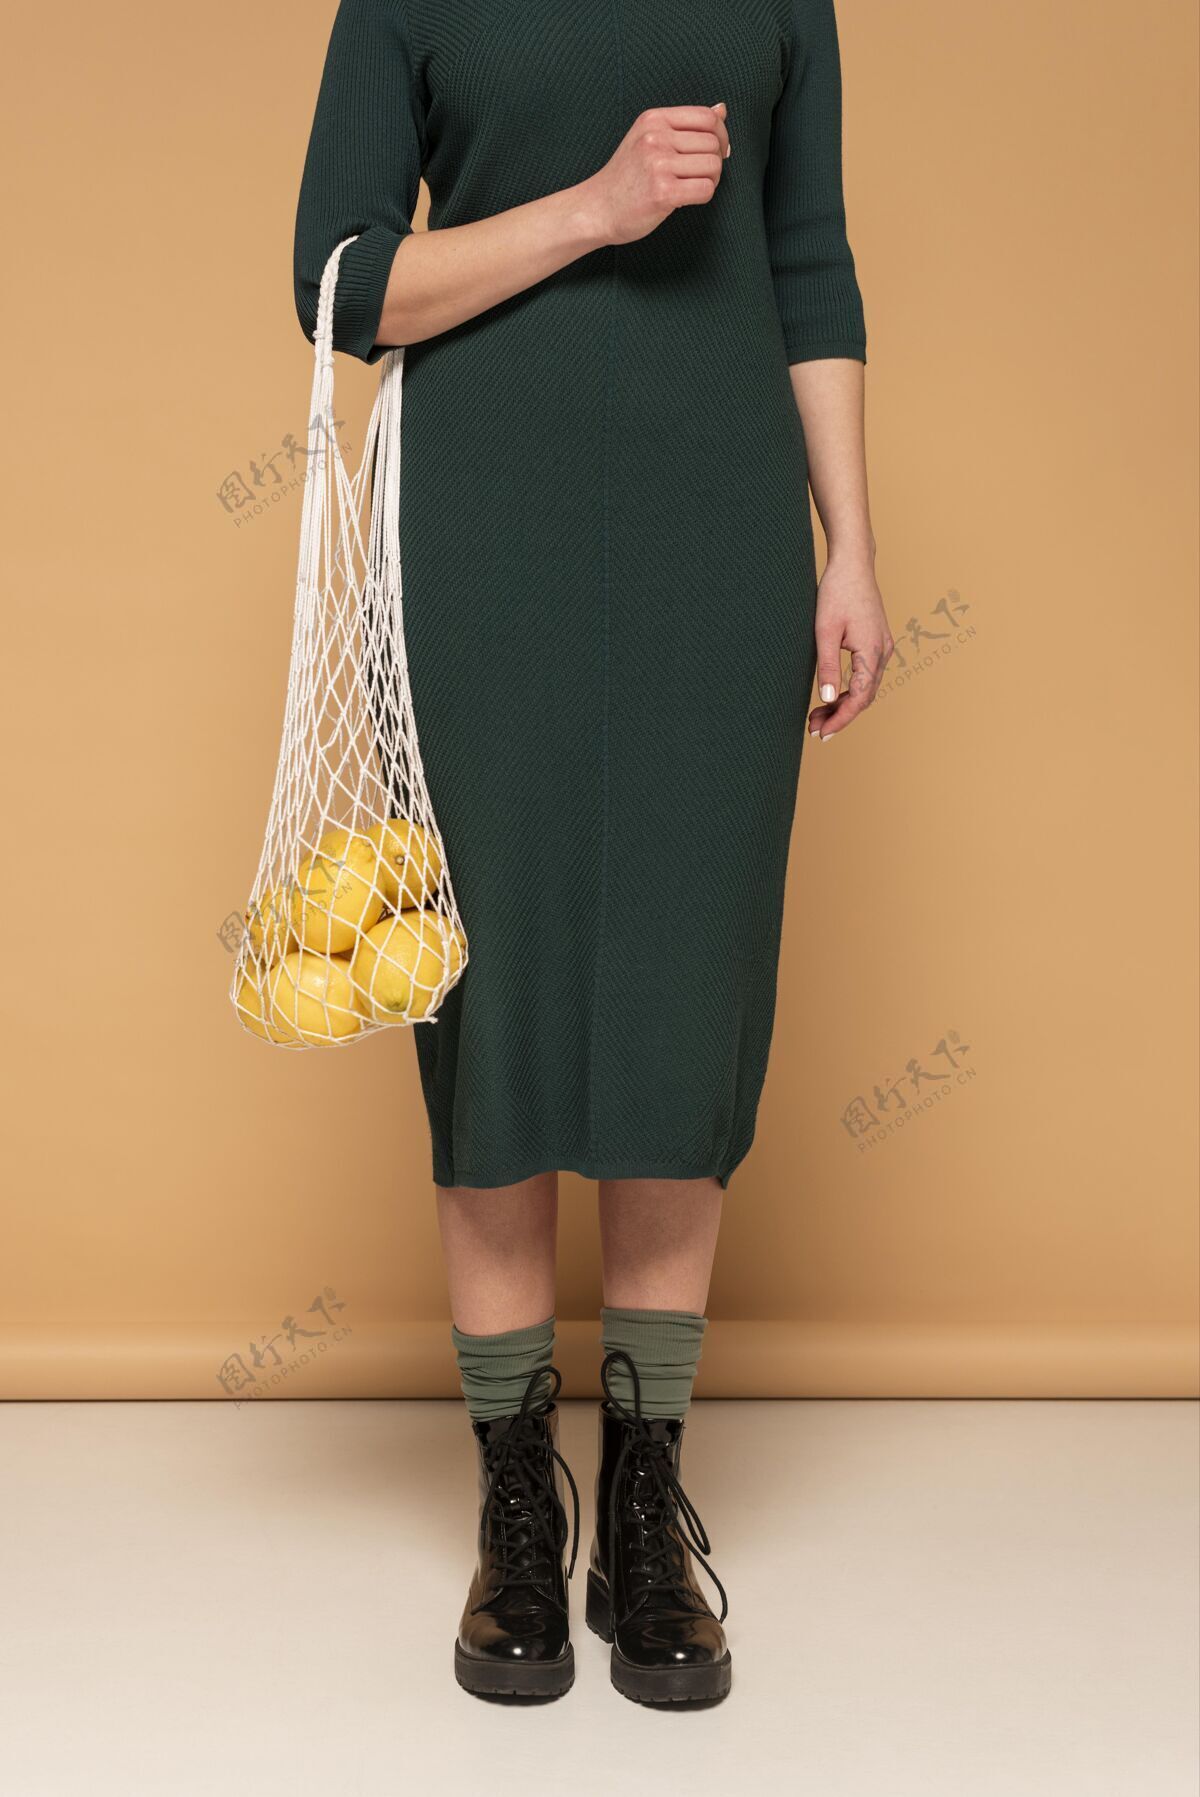 柠檬一个穿着休闲服的女人拎着可重复使用的海龟包女人可重复使用的袋子环保